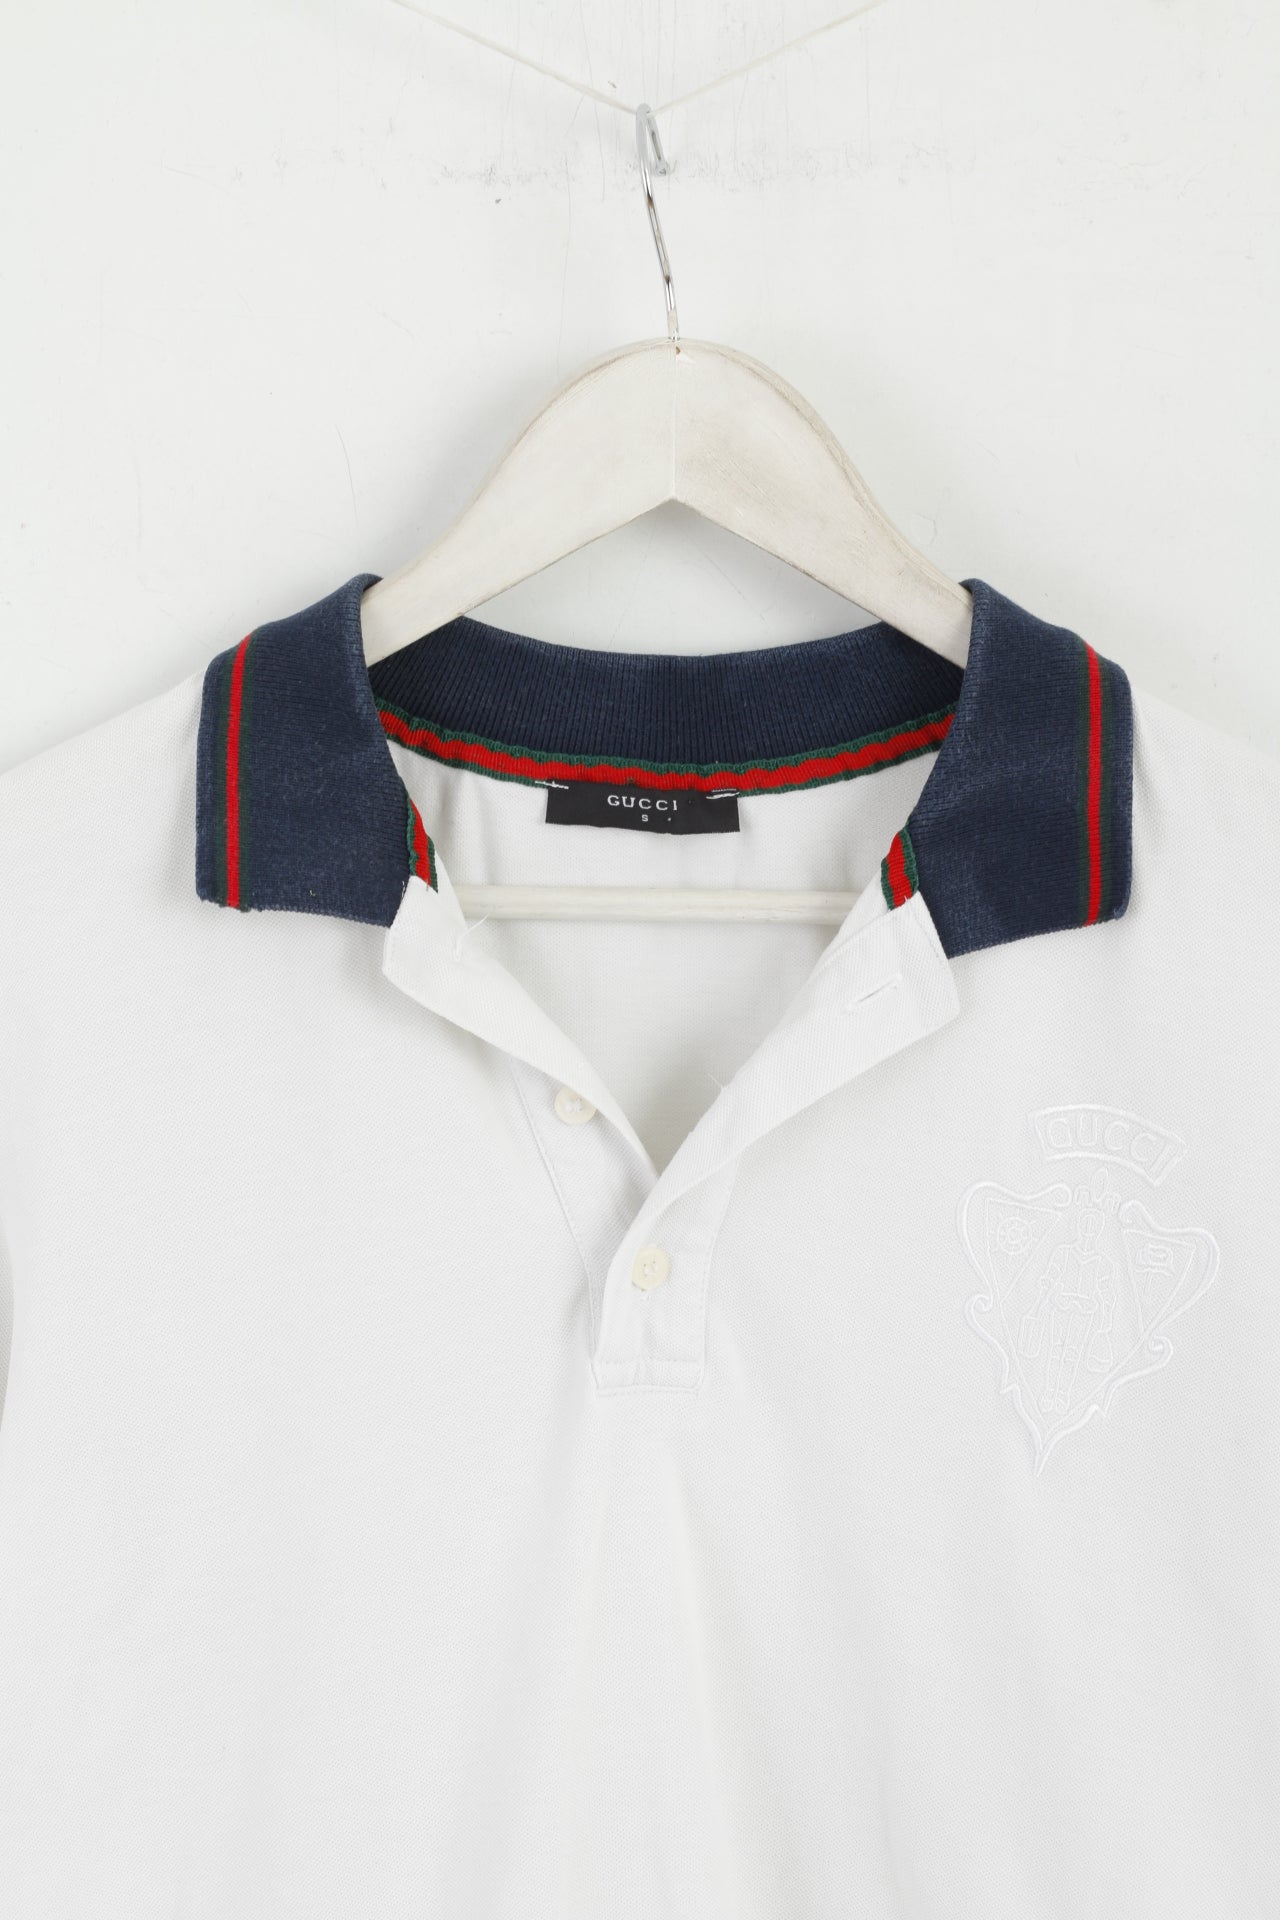 Polo Gucci da uomo S, parte superiore elasticizzata con bottoni classici dettagliati bianchi